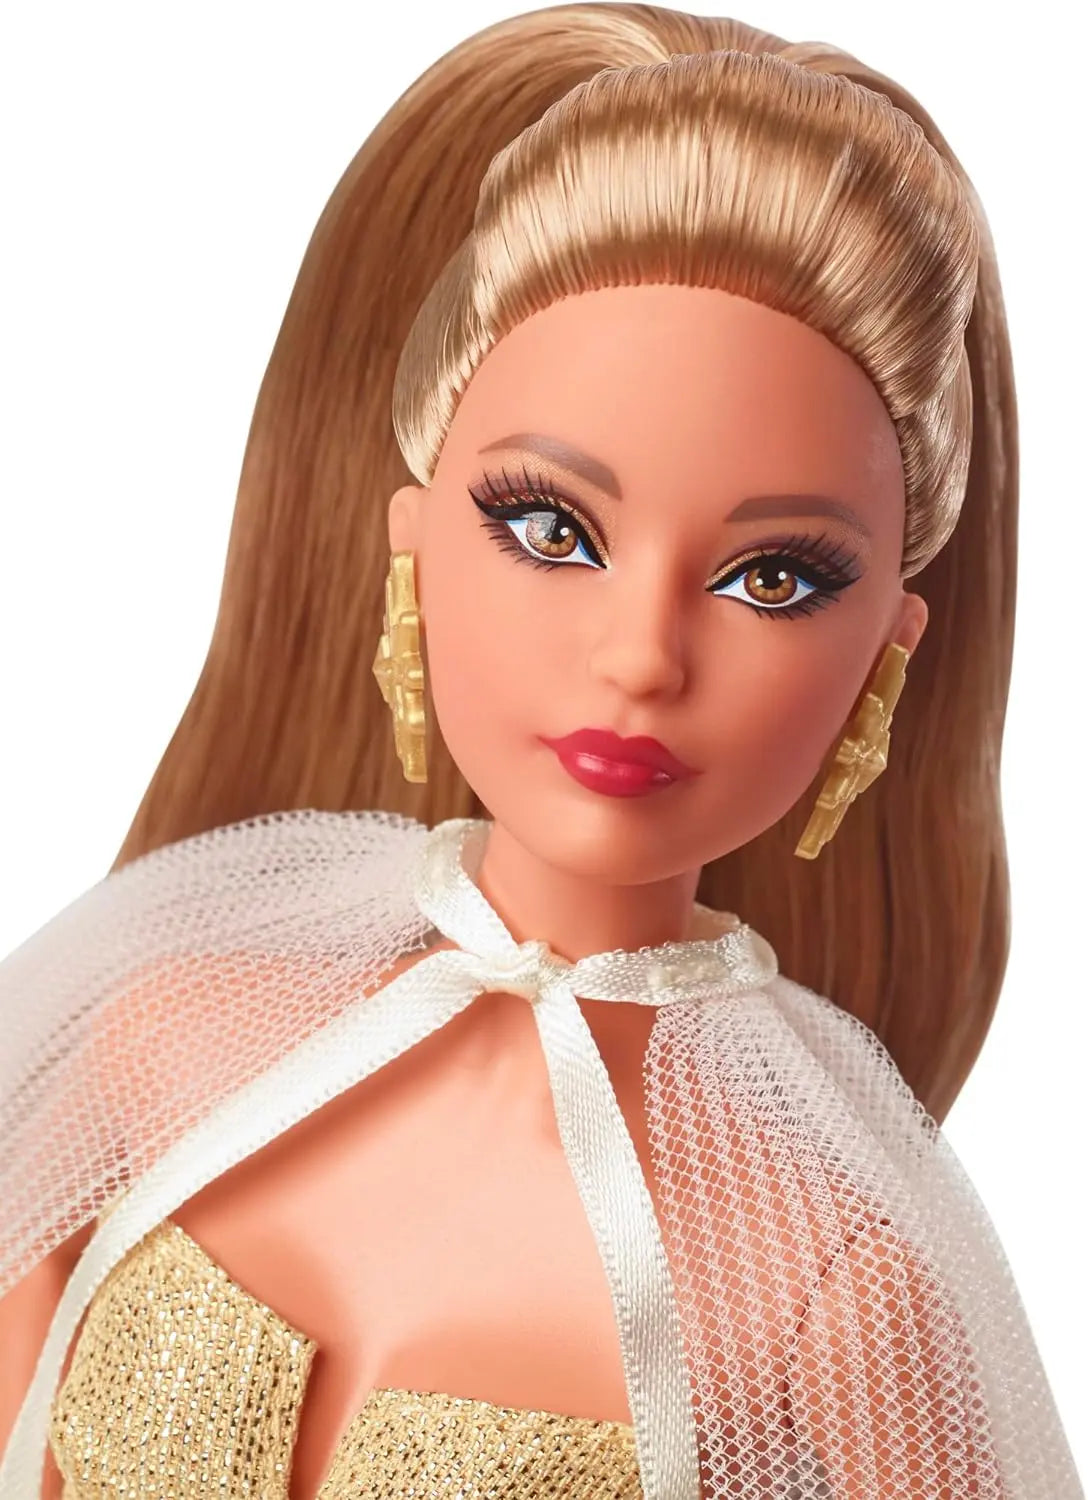 Barbie – Animaux Domestiques De Luxe (Blonde) 